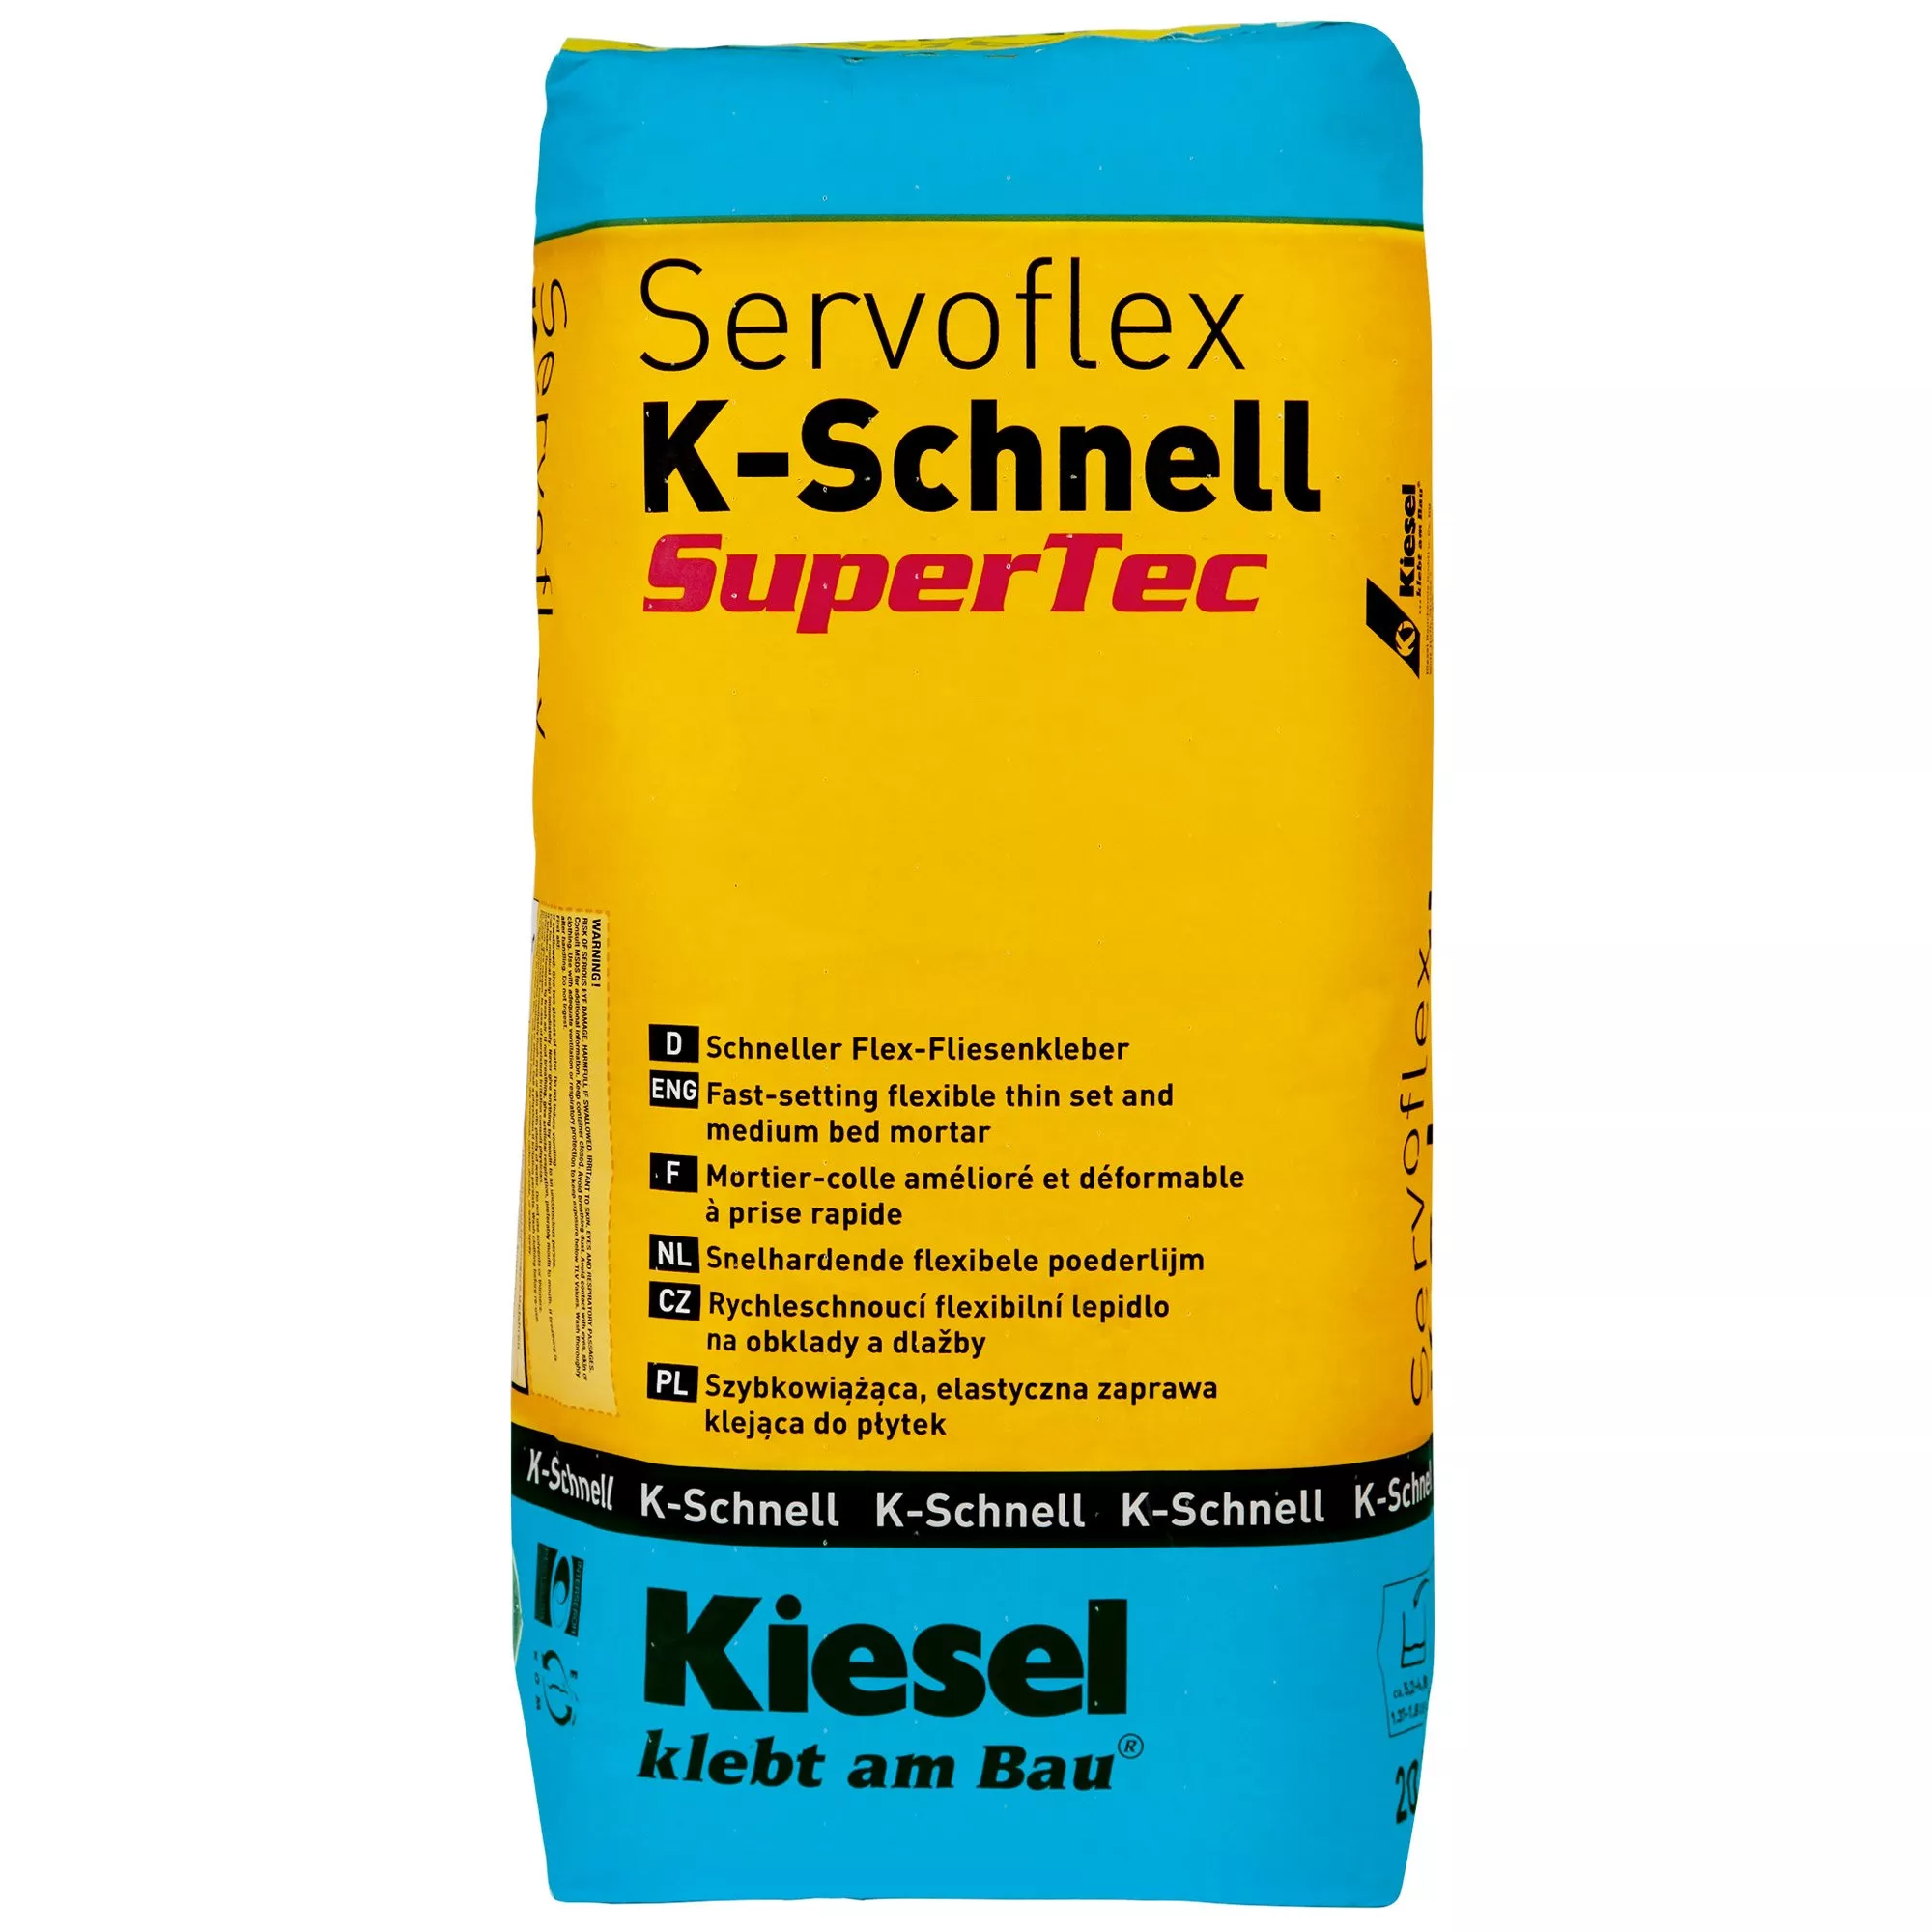 Kiesel Servoflex K-Schnell - Belægninger I Stort Format Hurtigt Klæbemiddel (20 Kg)